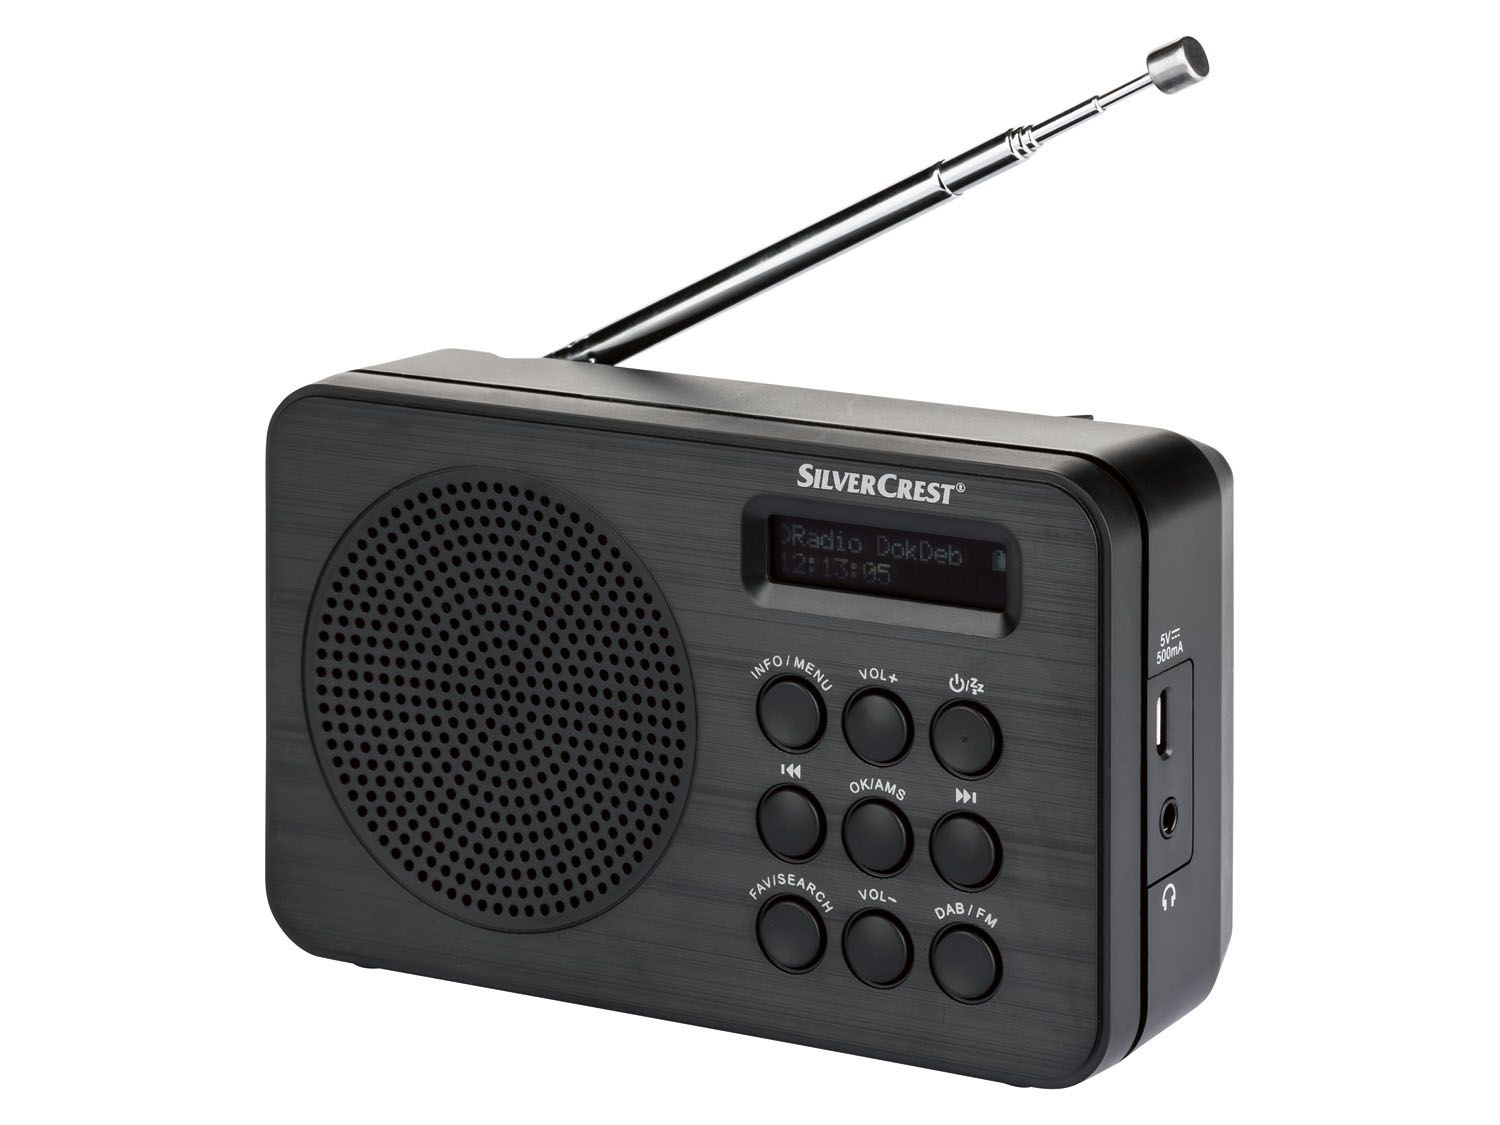 Geaccepteerd Ongedaan maken toevoegen DAB+ radio kopen? | LIDL